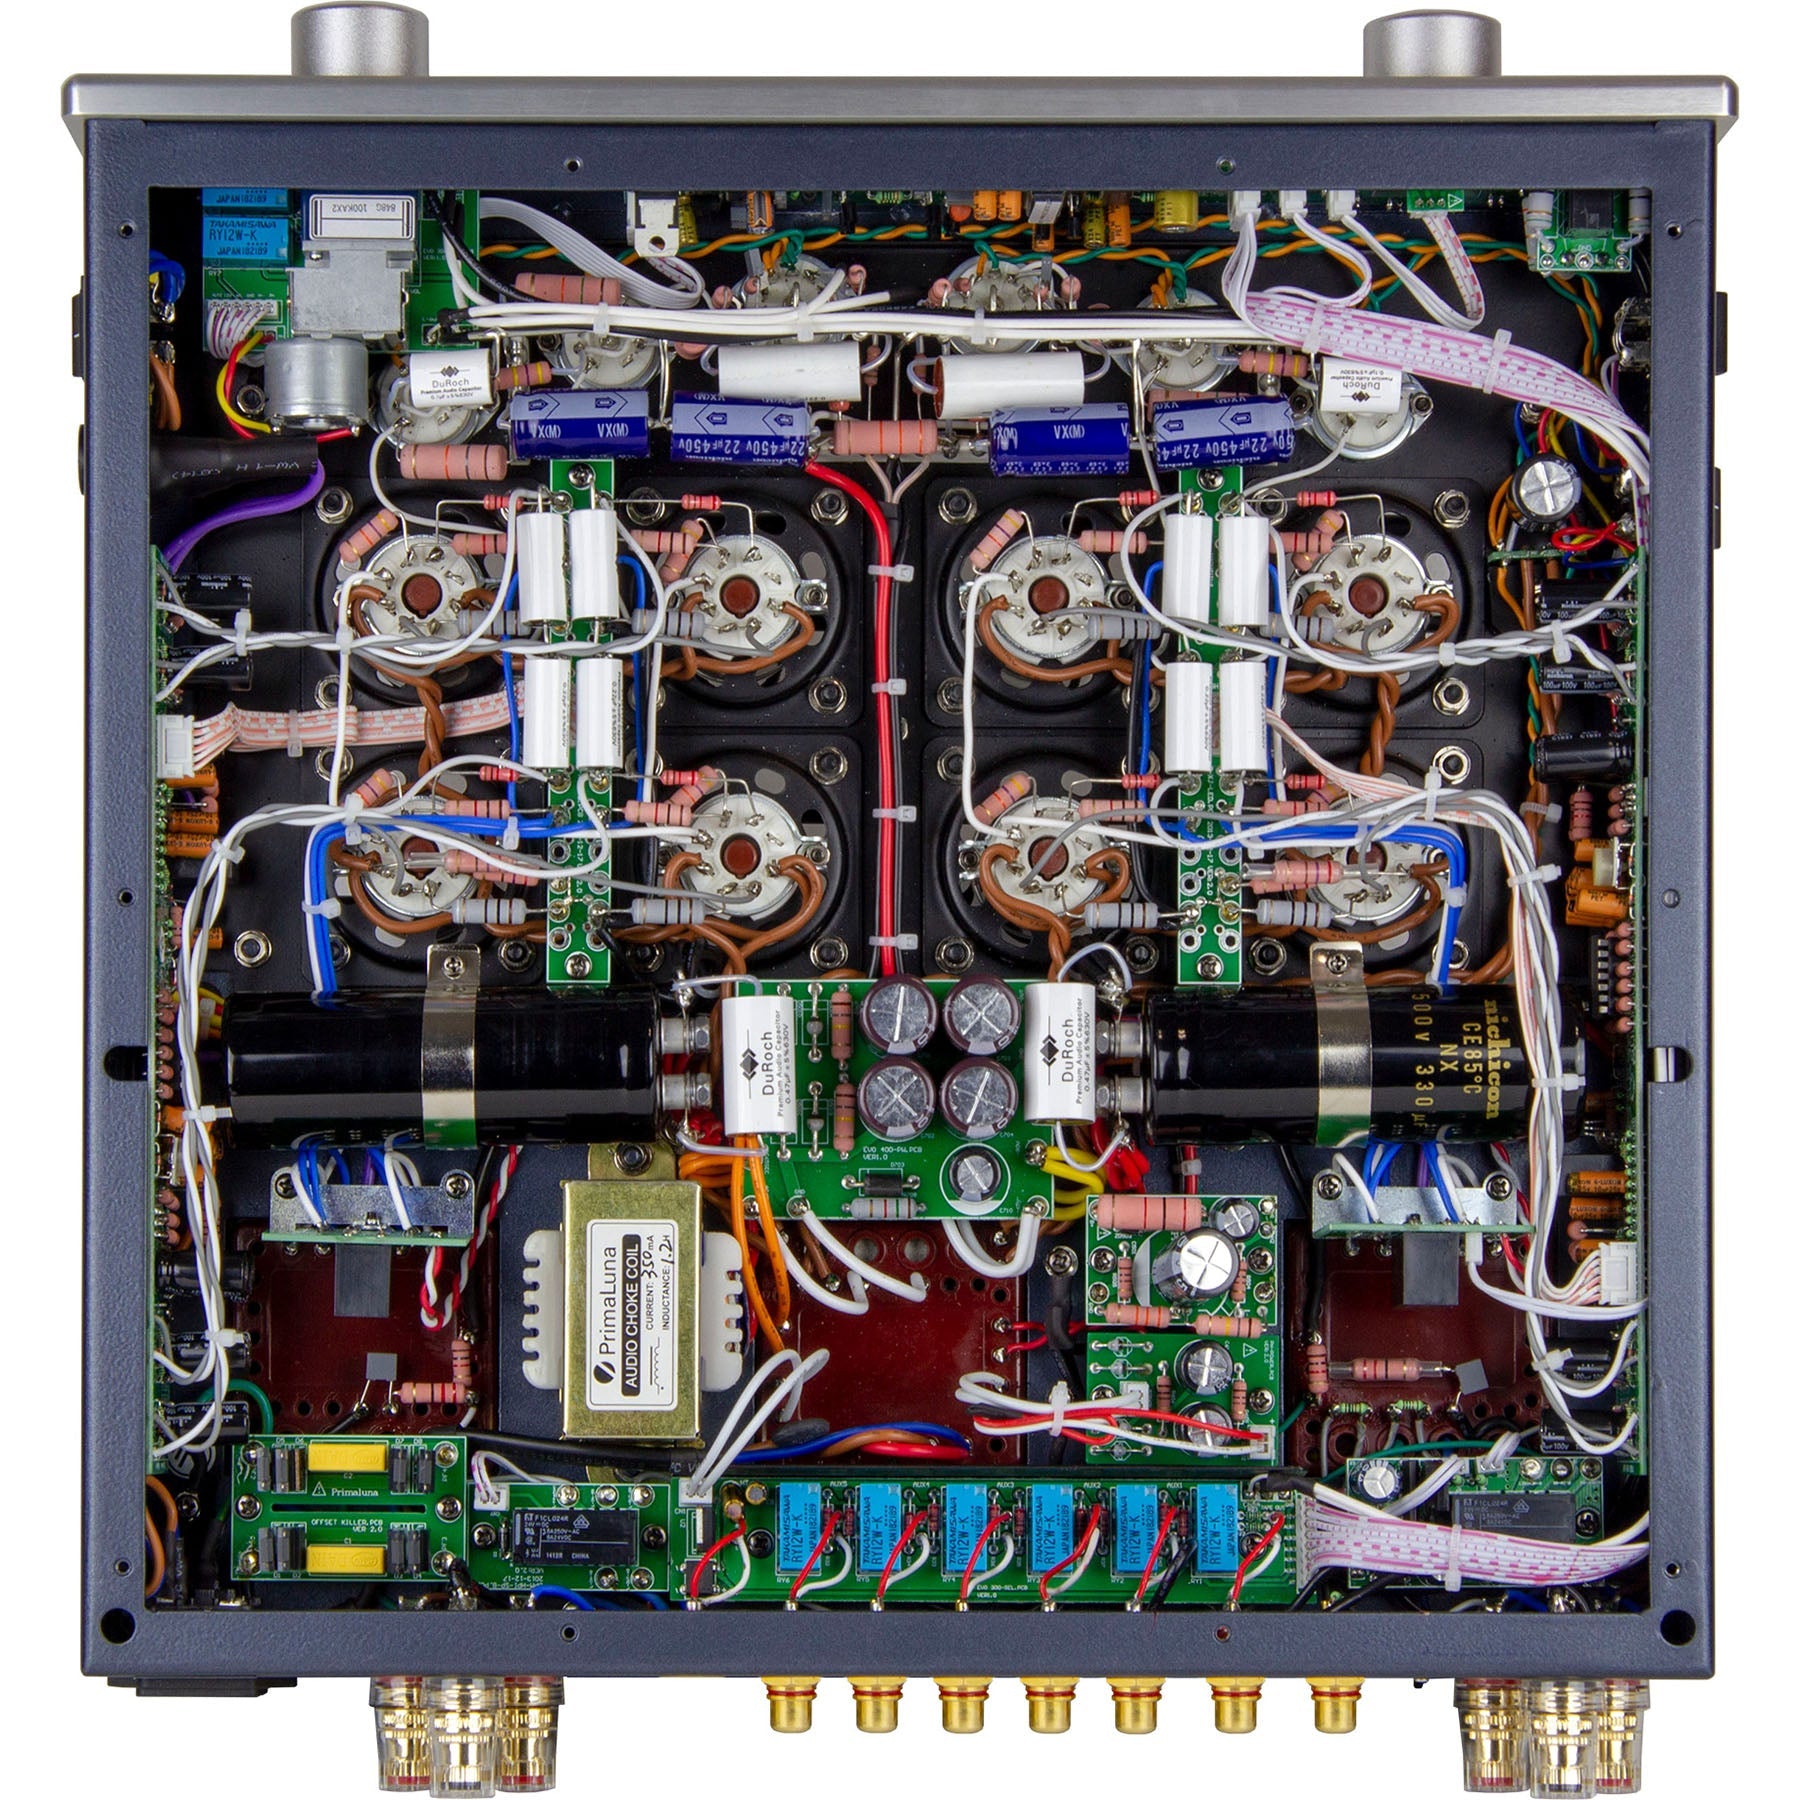 [Ex-demo] PrimaLuna Evo 400 Tube Integrated Amplifier